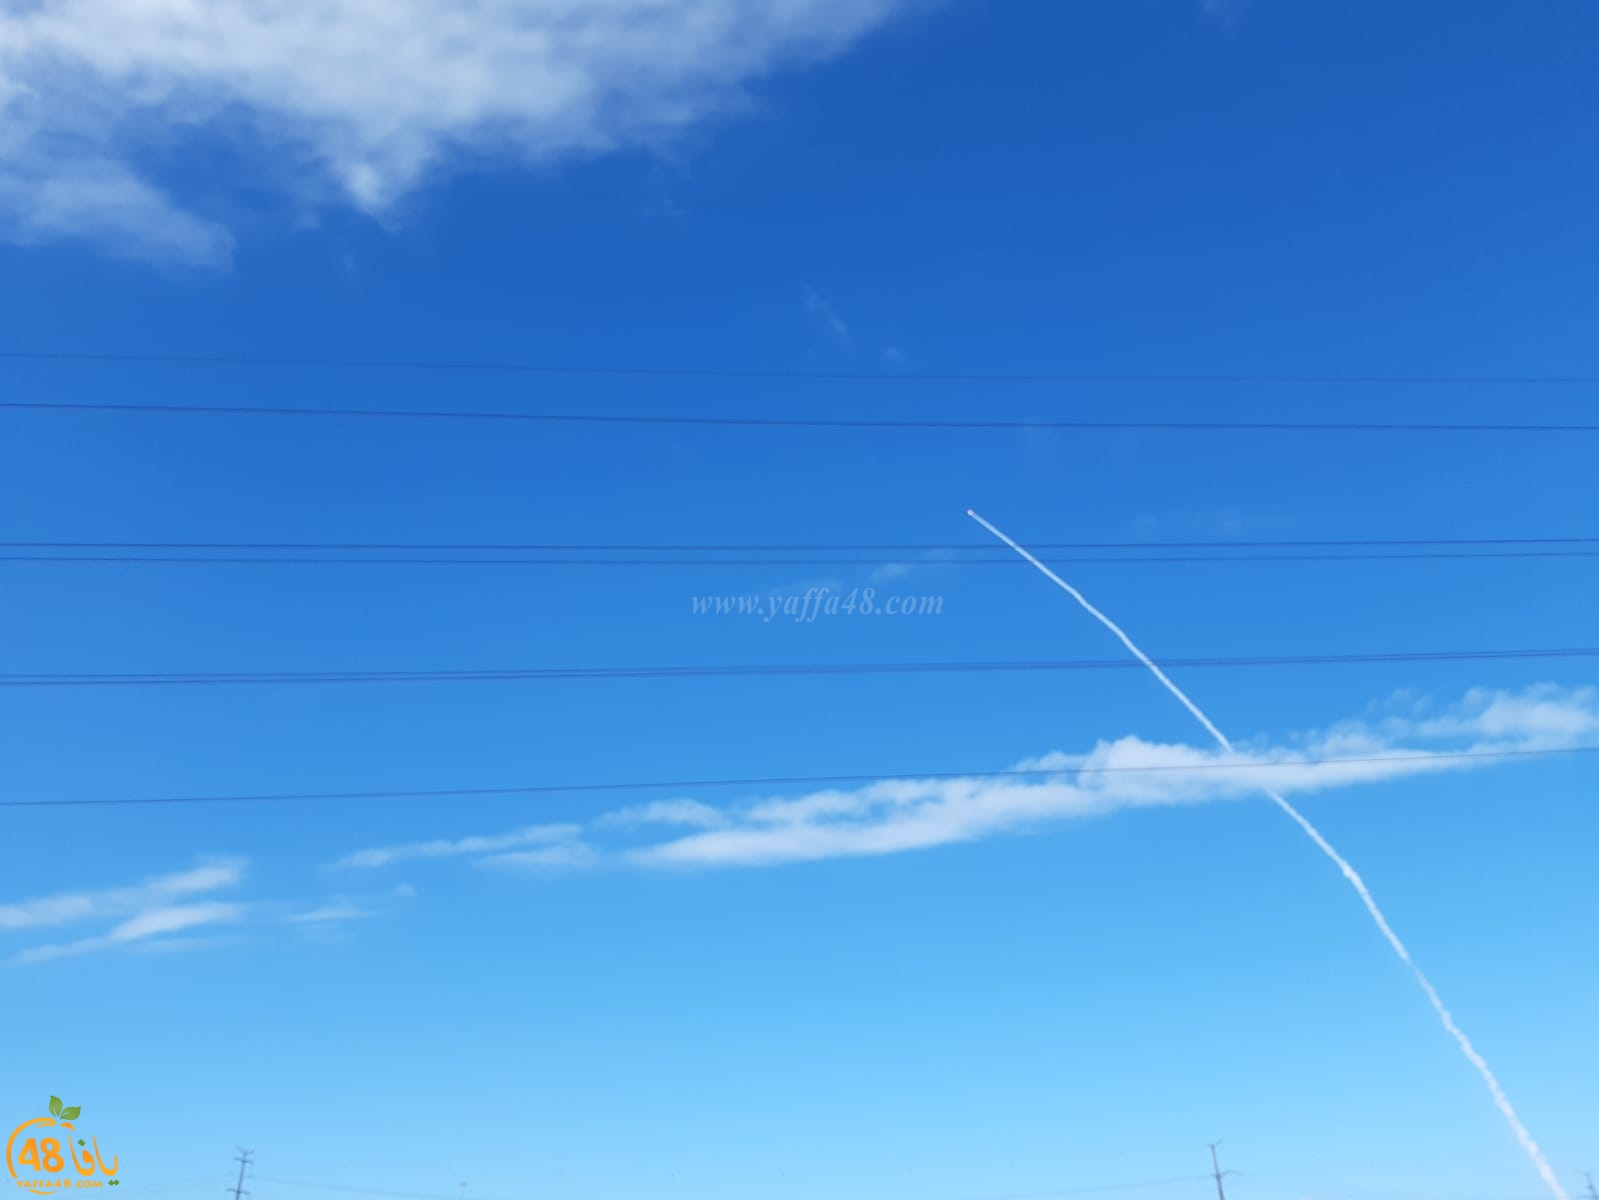  فيديو: تجربة لإطلاق صاروخ شوهدت آثاره في سماء يافا 